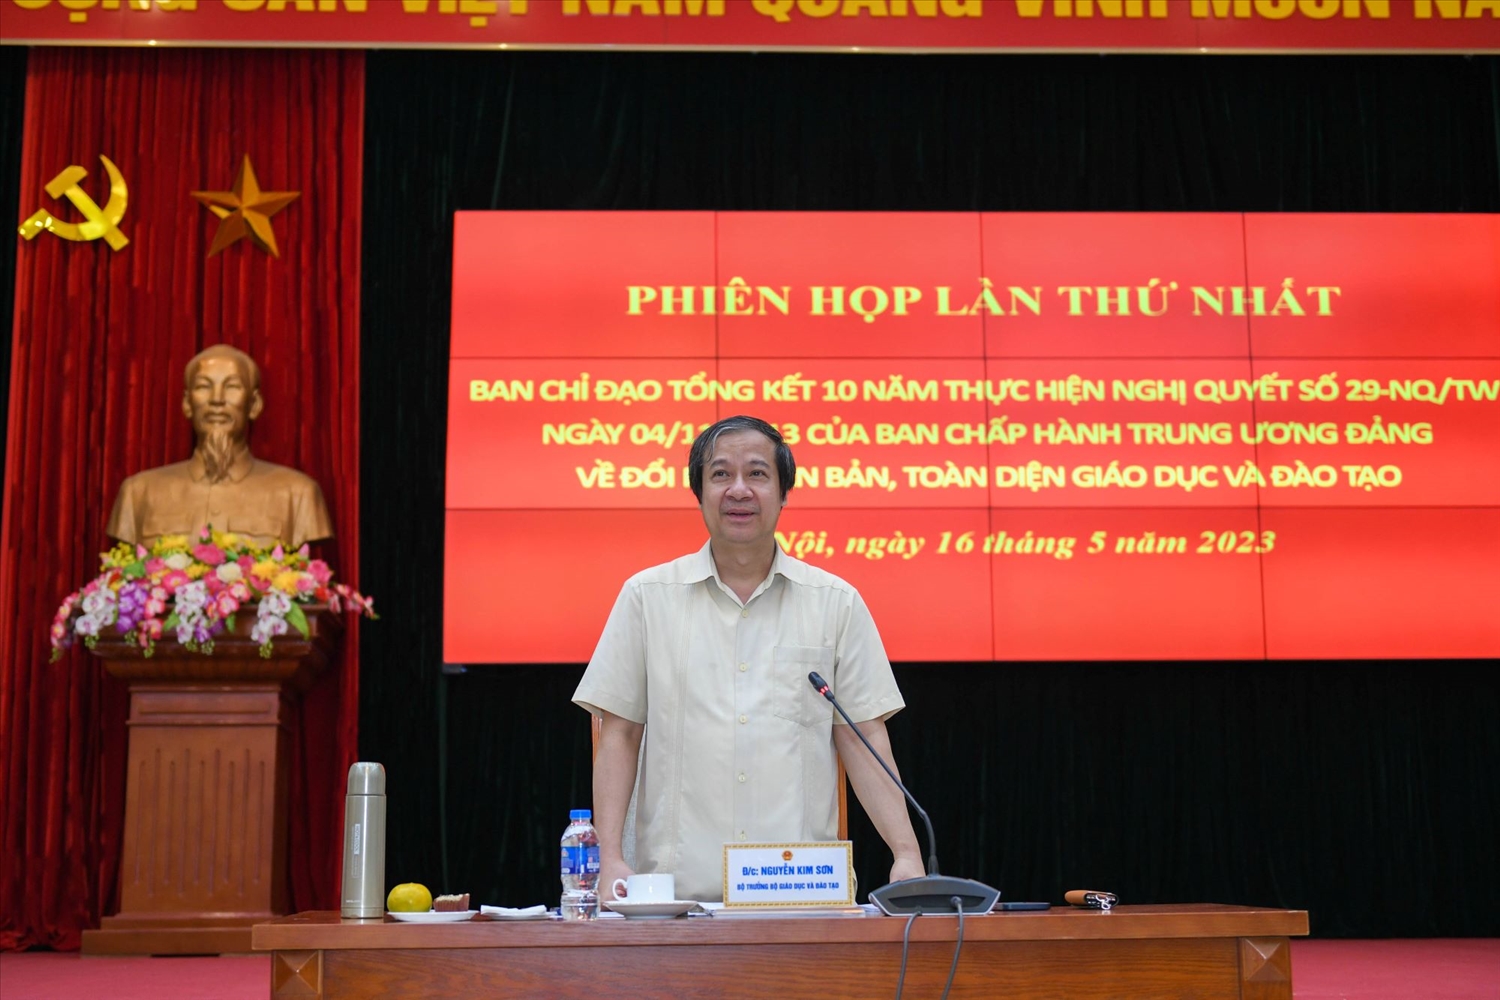 Bộ trưởng Bộ GD&ĐT Nguyễn Kim Sơn, Trưởng Ban Chỉ đạo tổng kết 10 năm thực hiện Nghị quyết số 29 về đổi mới căn bản, toàn diện giáo dục và đào tạo phát biểu tại phiên họp.